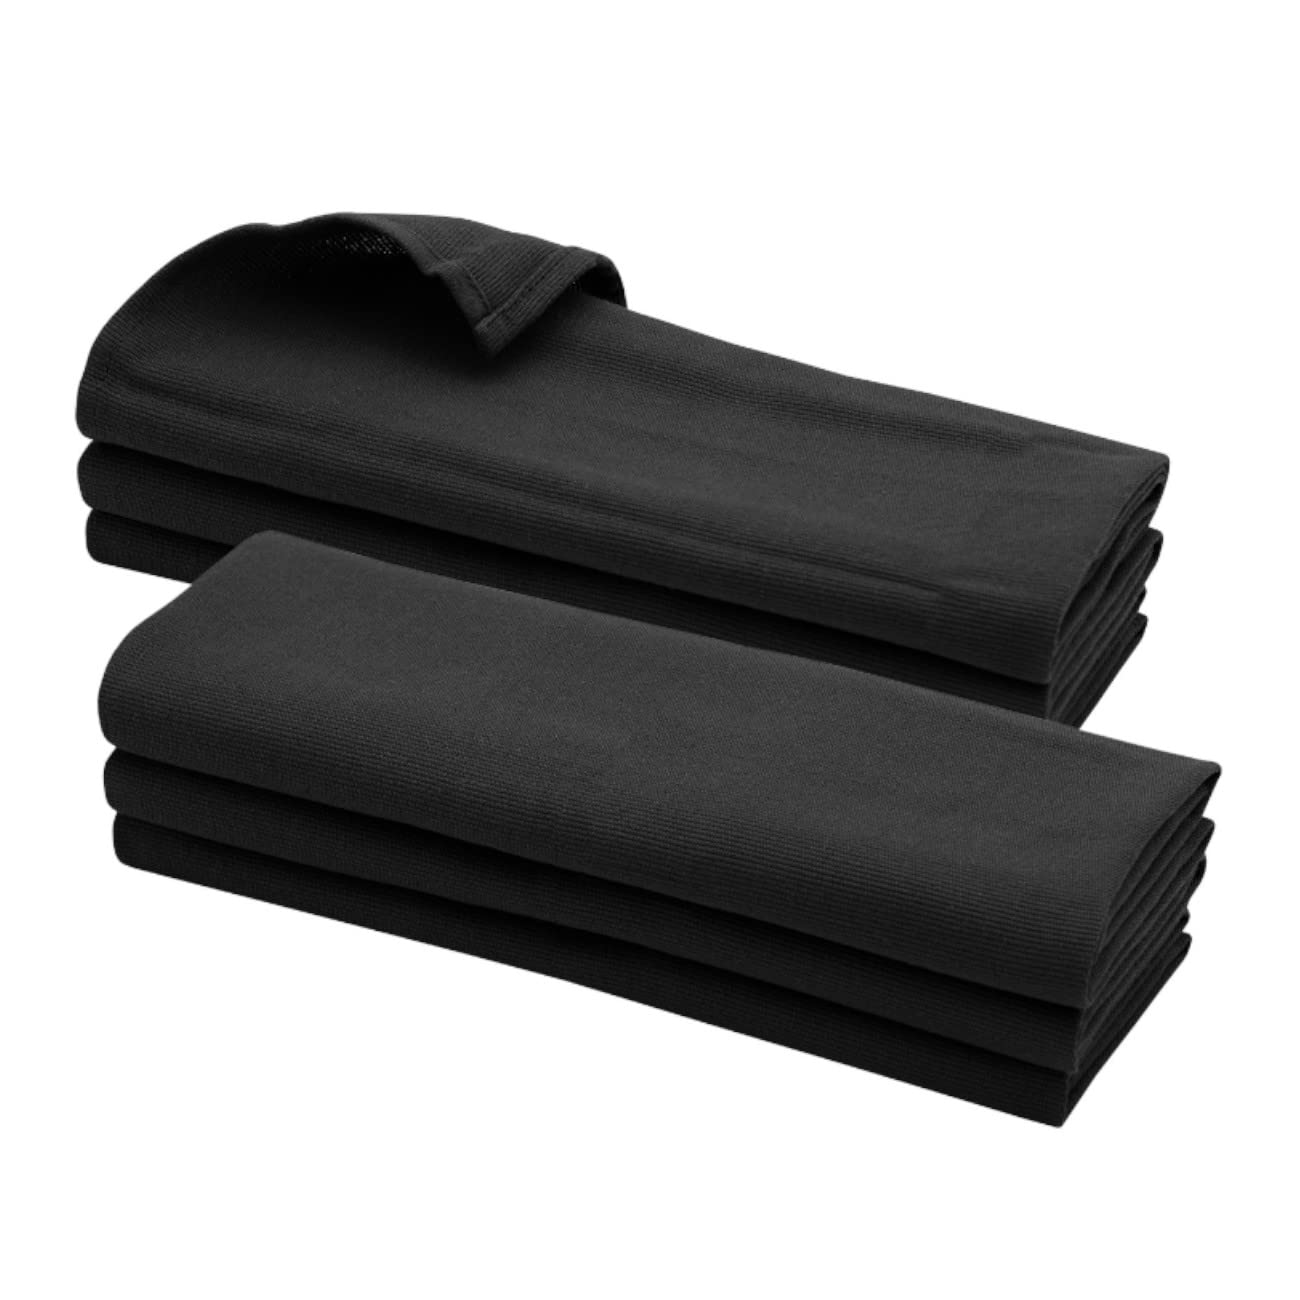 GARIELLA 6 Schwarze Geschirrtücher aus 100% Baumwolle / 70 x 50 cm/Handtuch/Küchentuch/Spültuch/Putztuch/schwarz